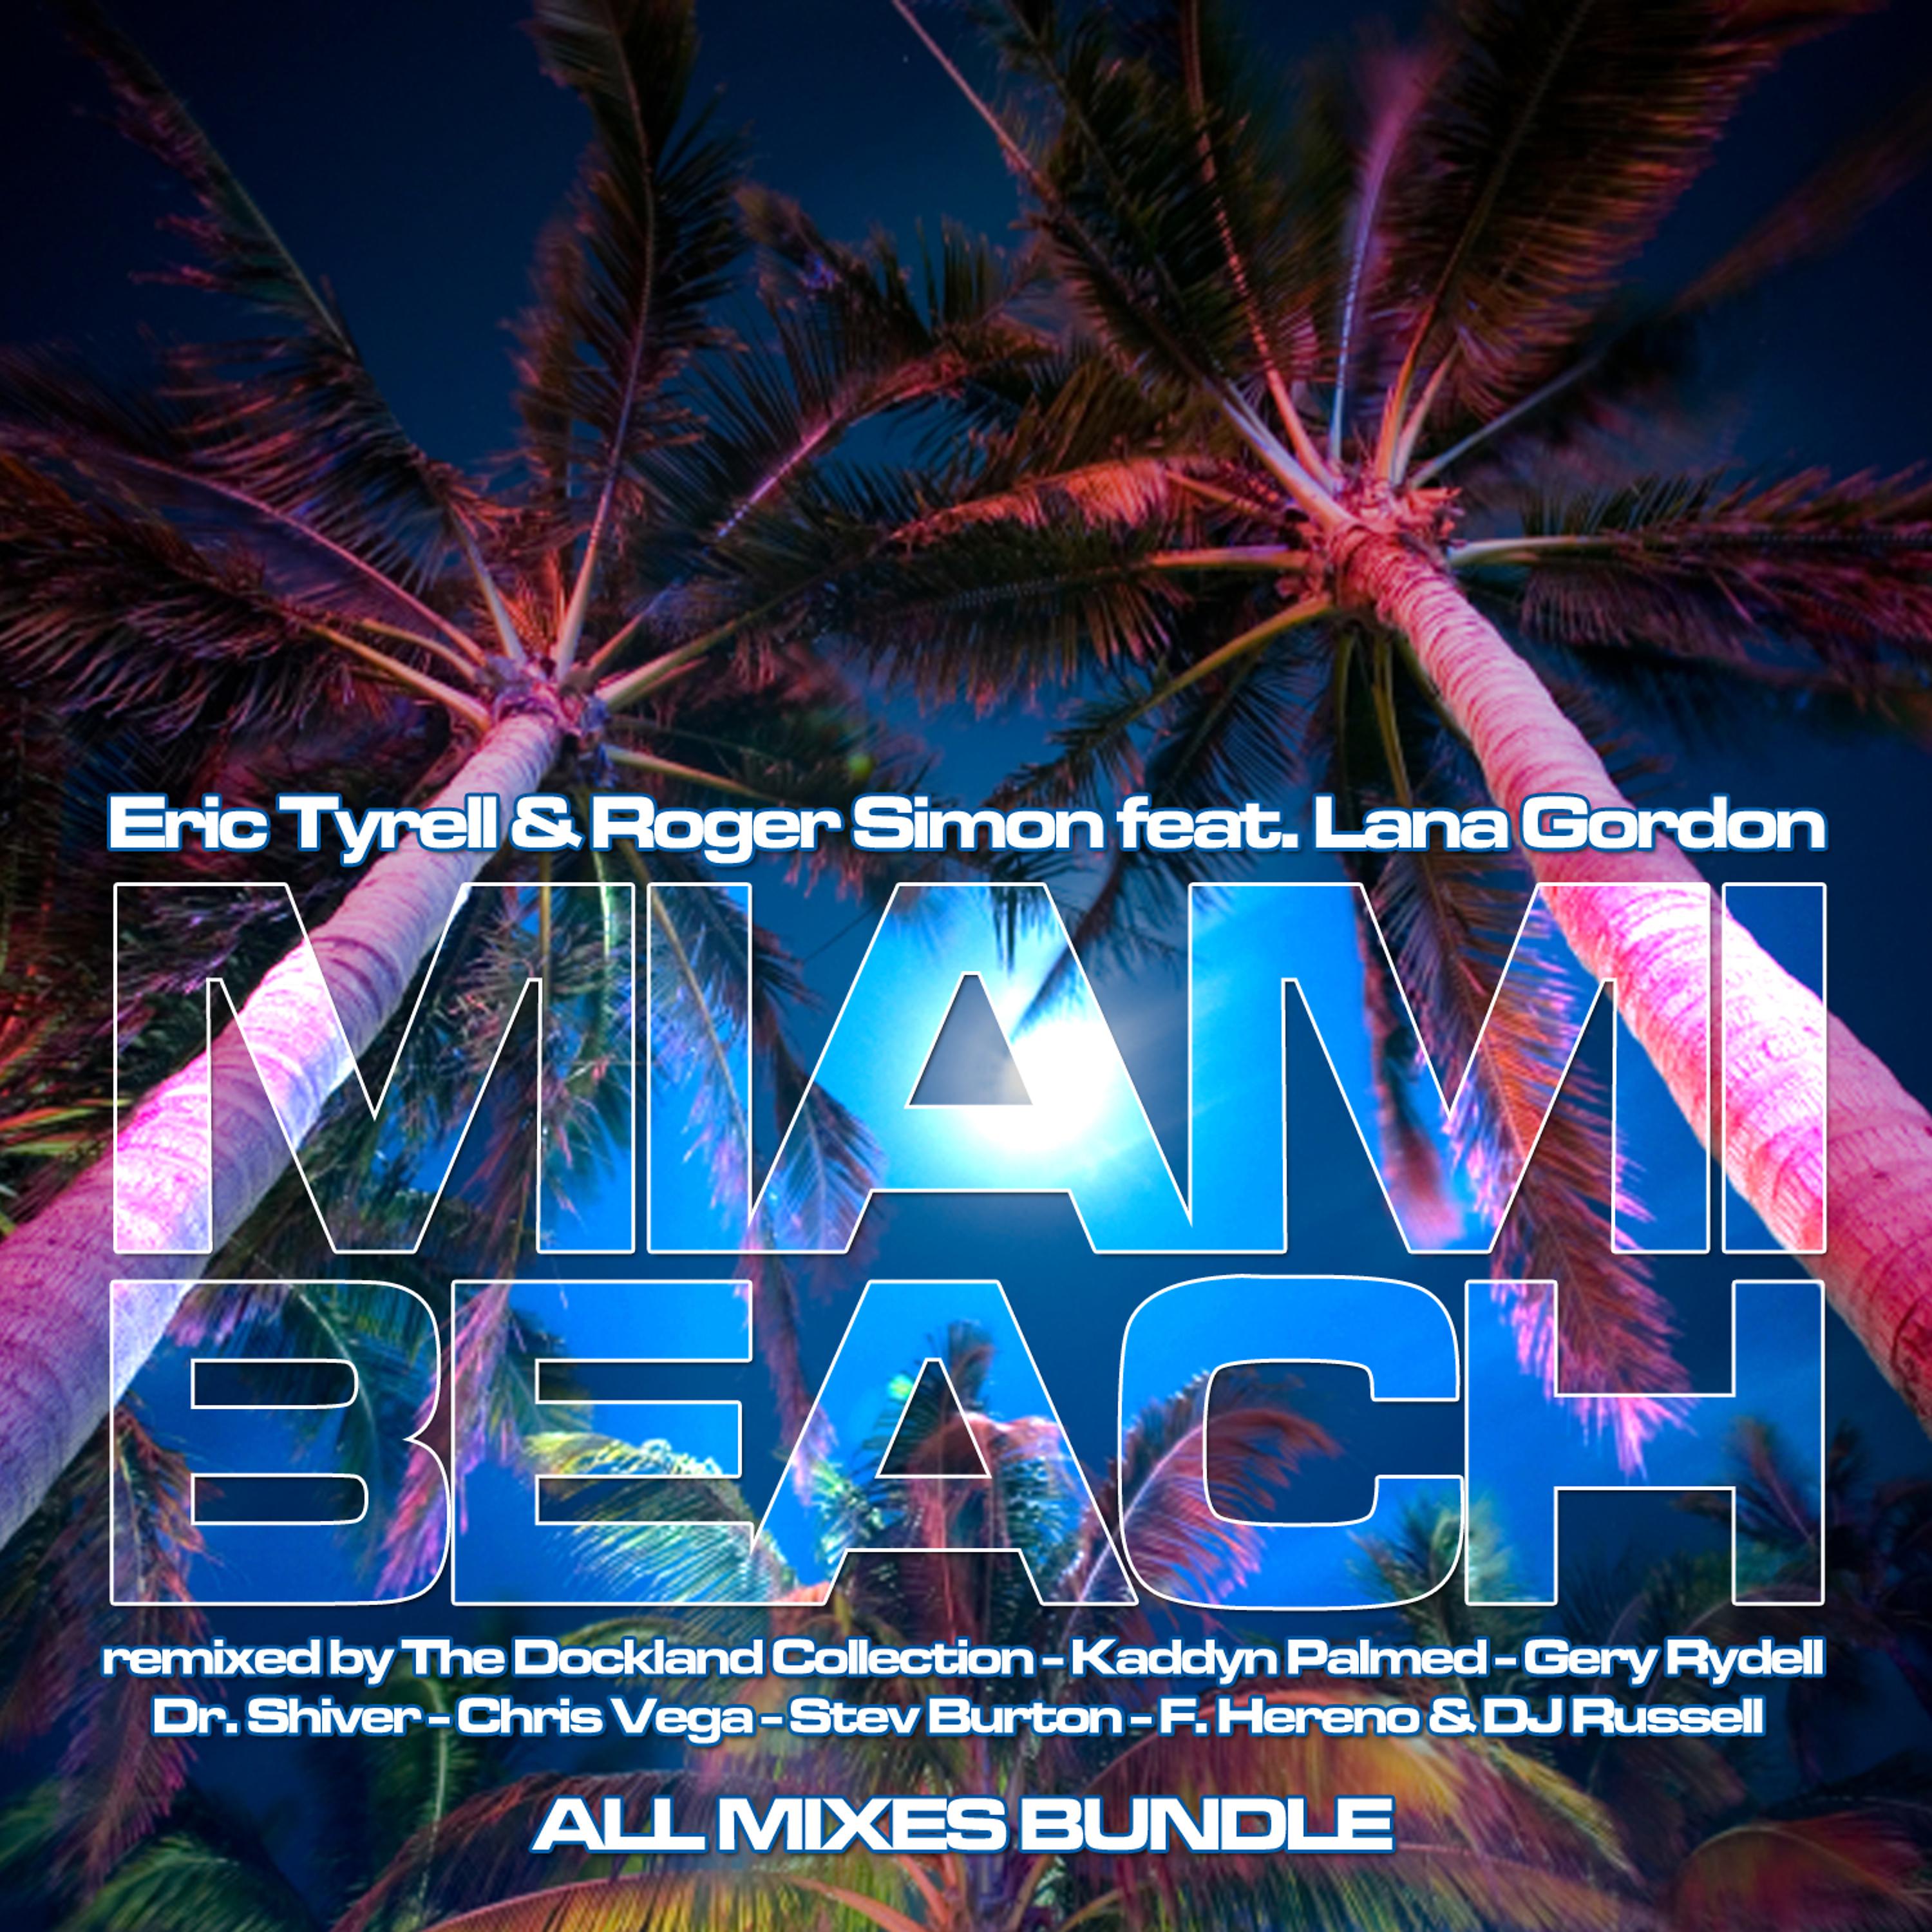 Постер альбома Miami Beach